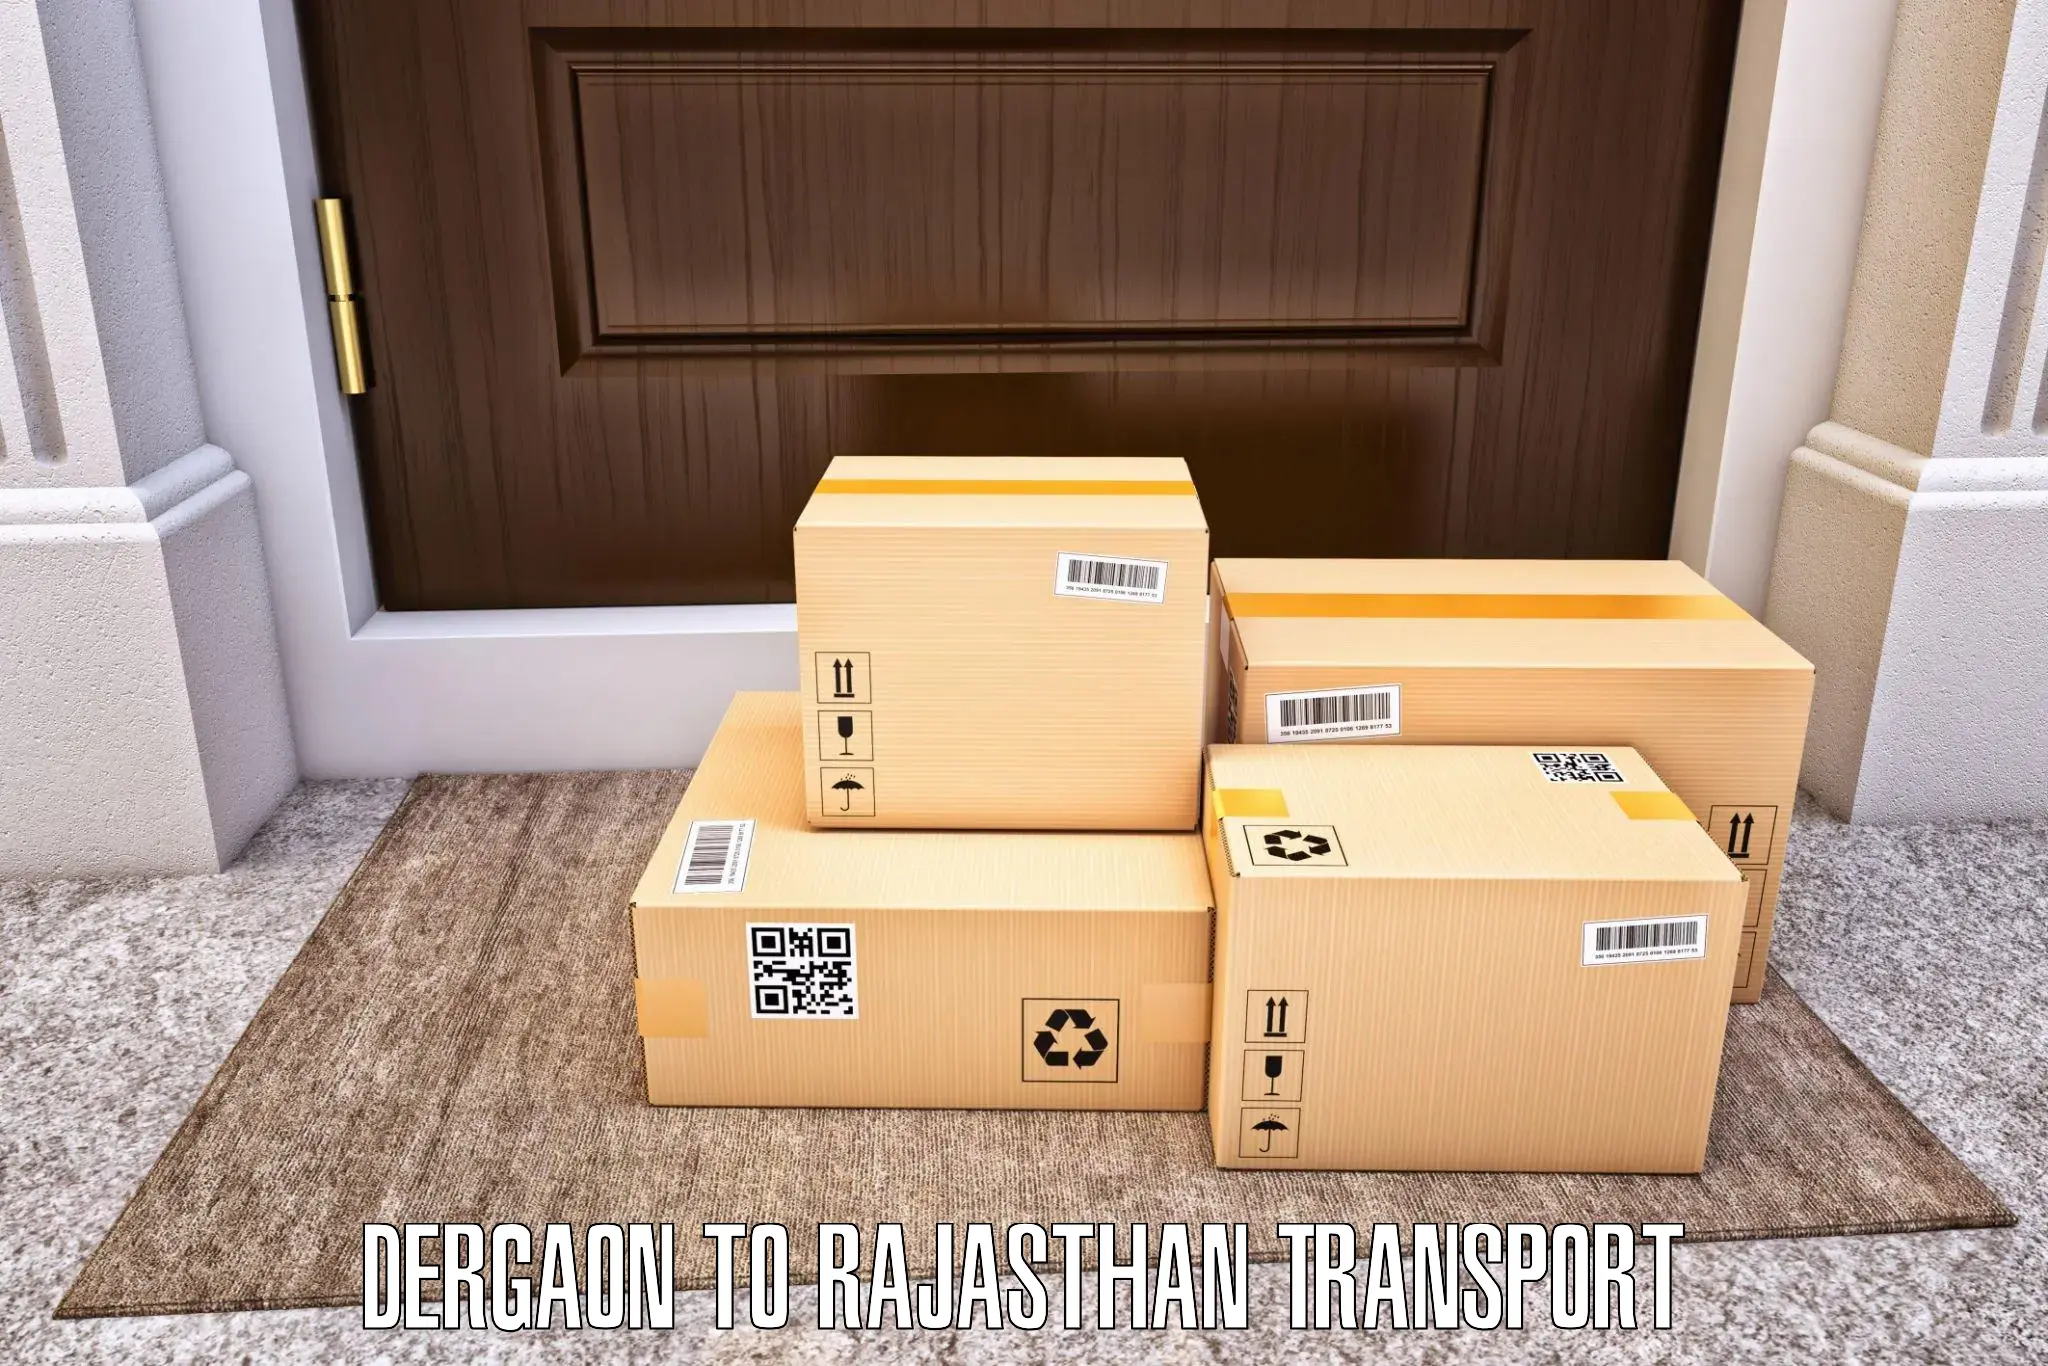 Transport in sharing Dergaon to Rajasthan